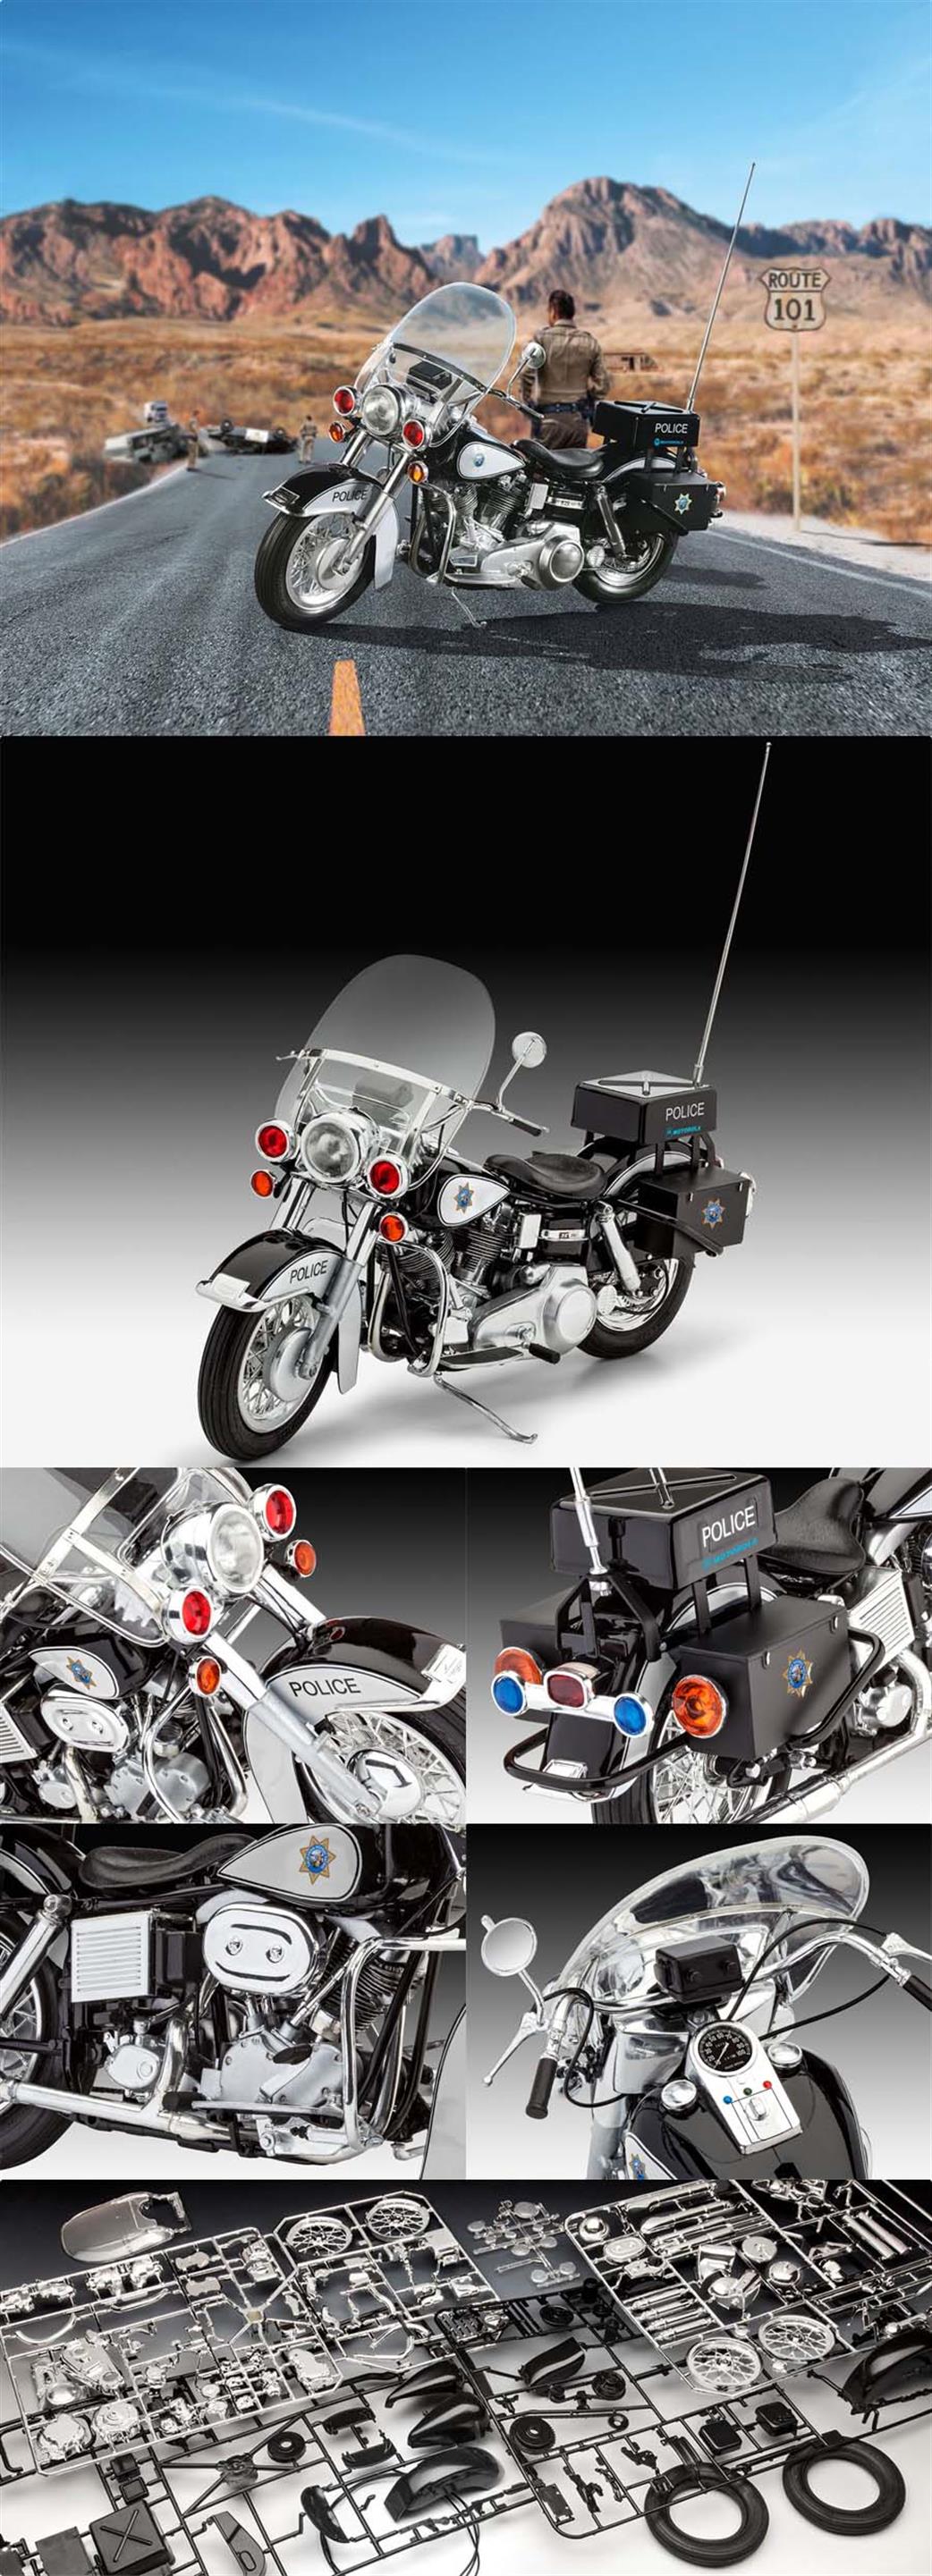 Revell 1/9 07915 US Police Motorbike Kit